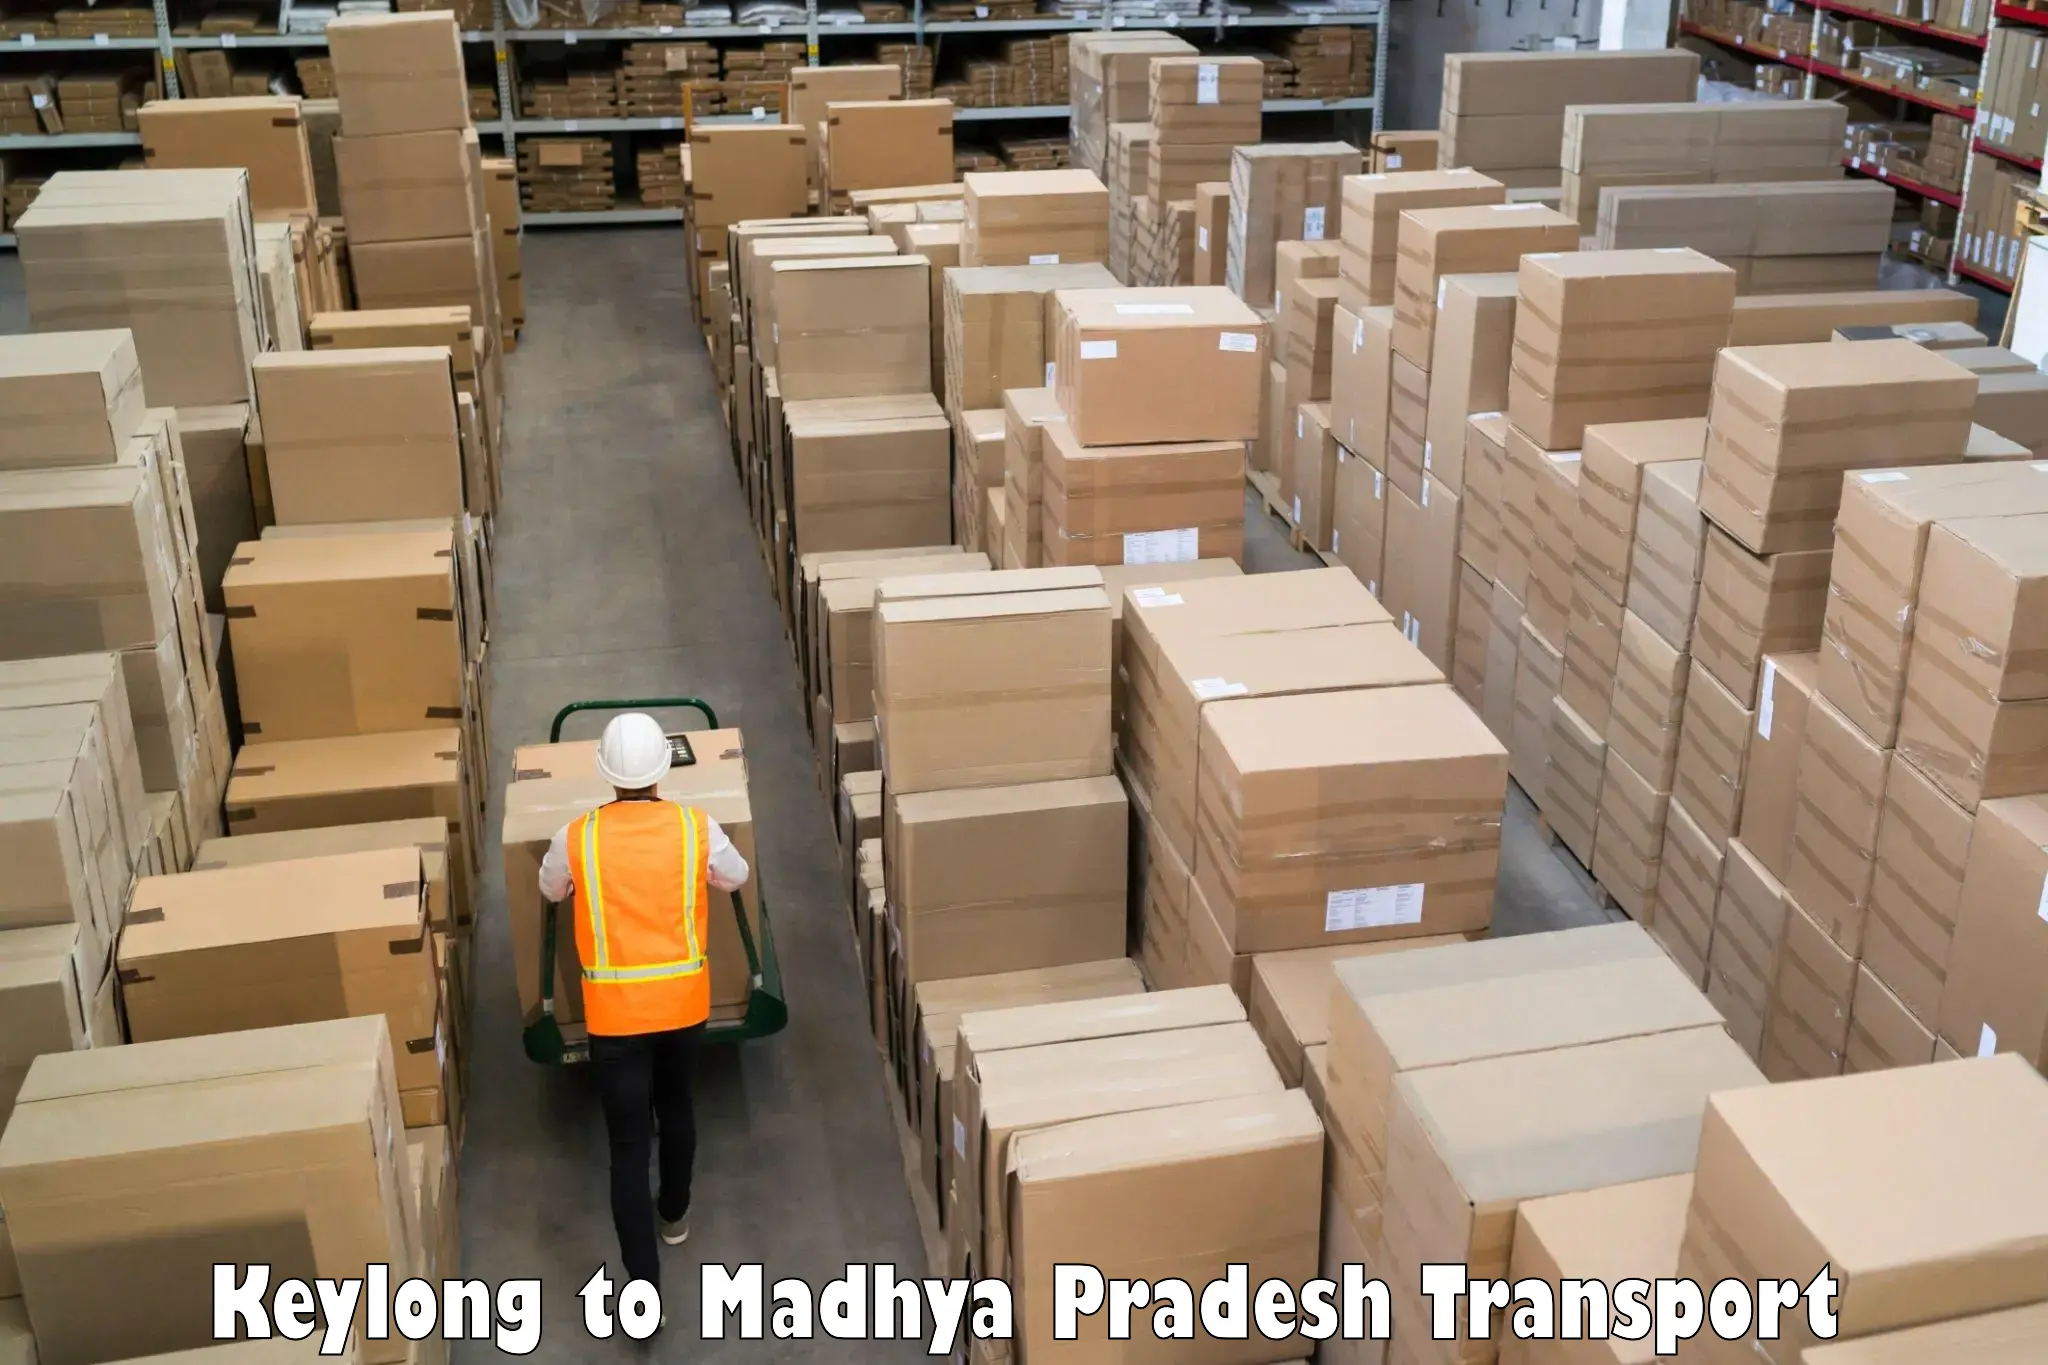 Lorry transport service Keylong to Chhindwara